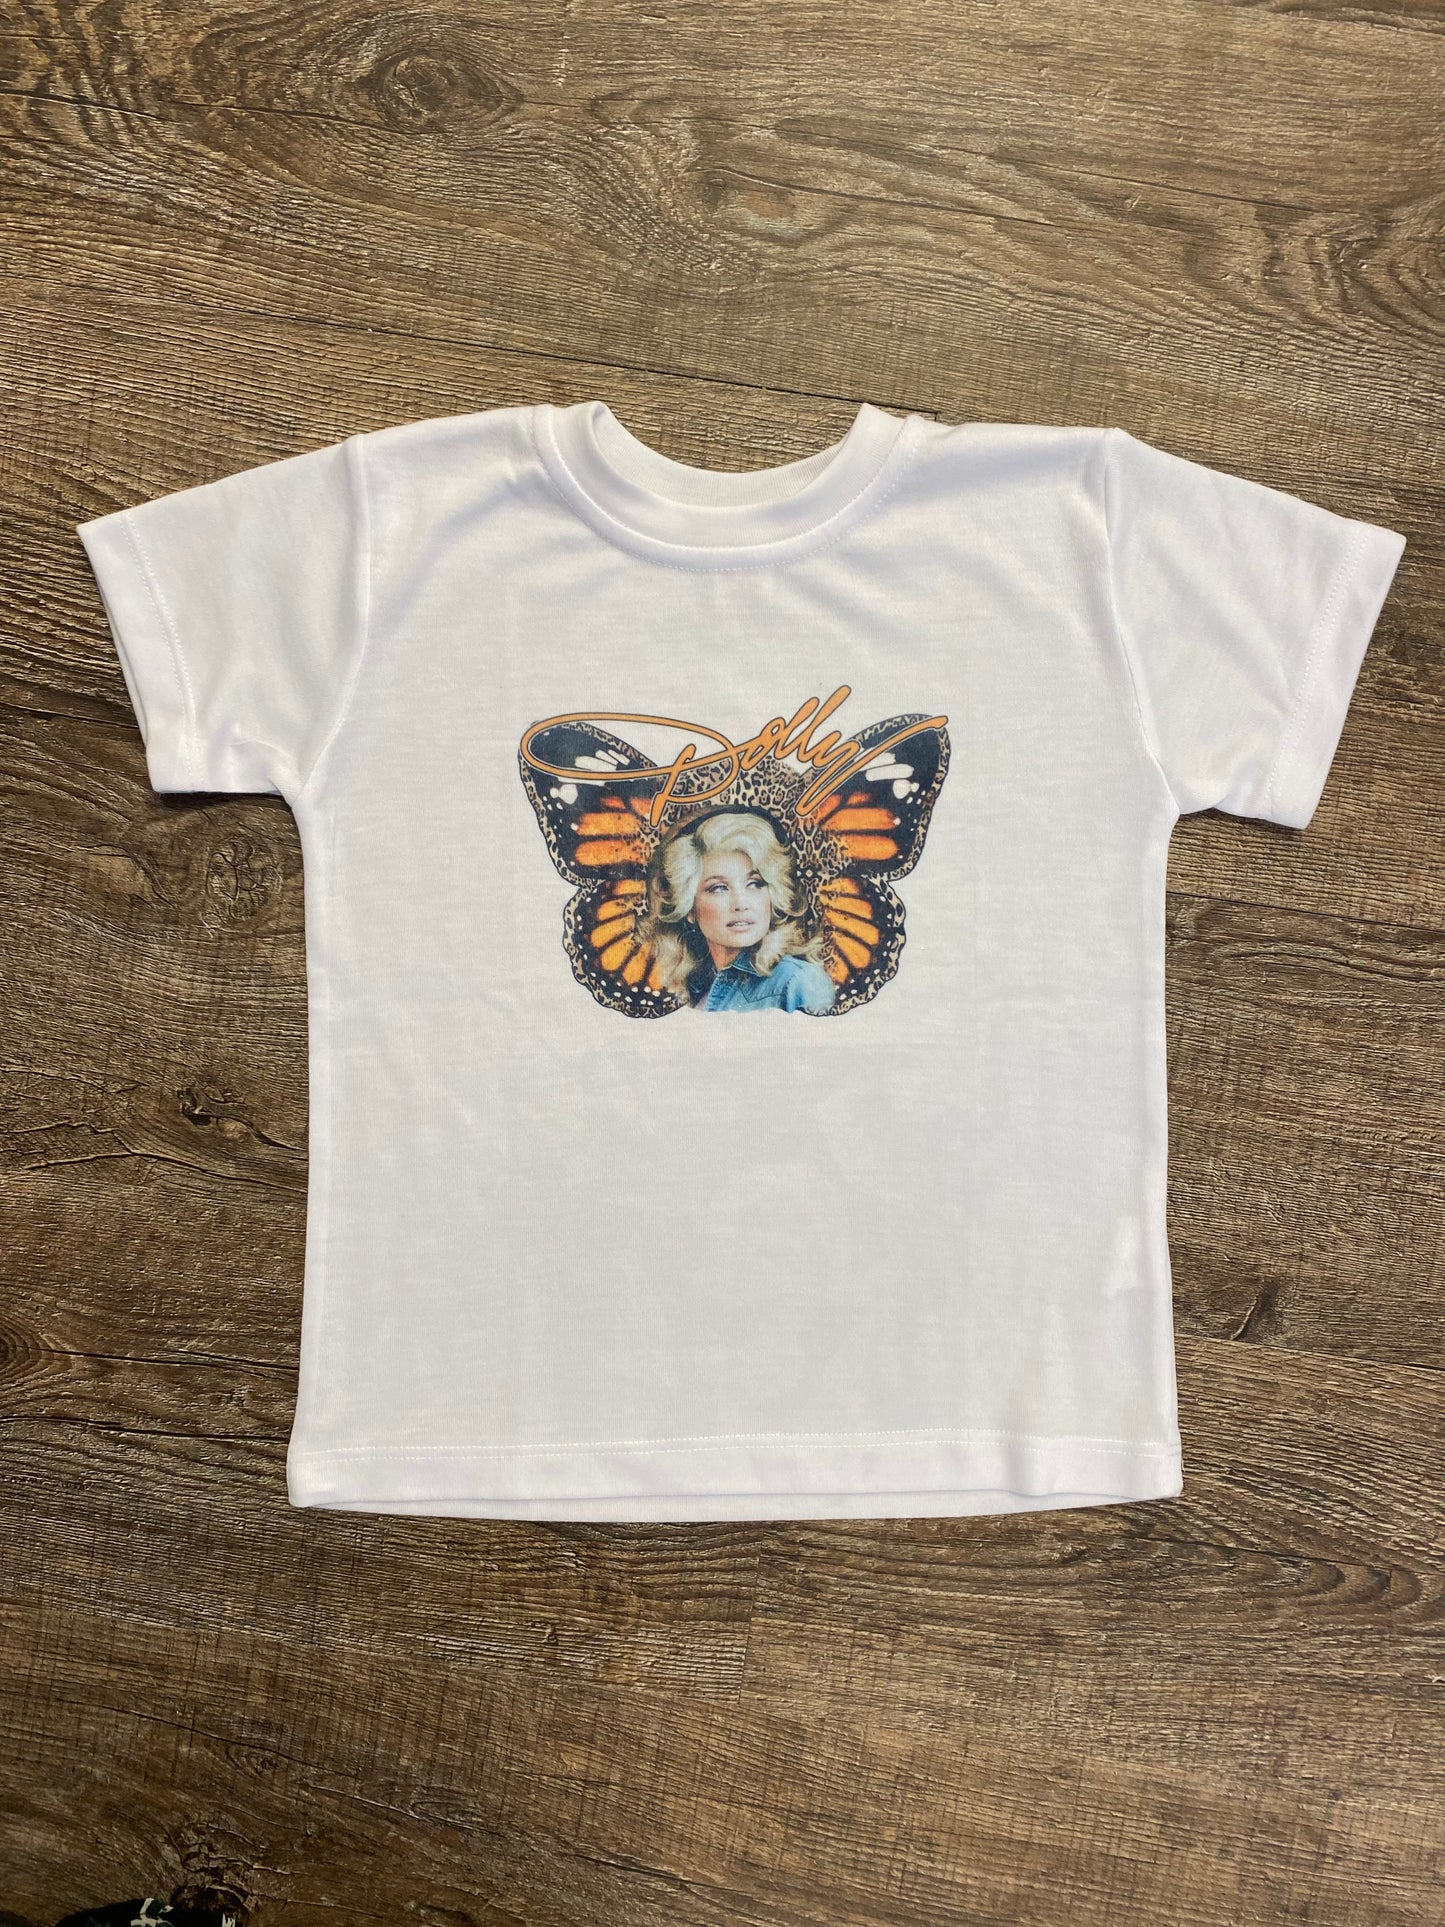 Butterfly t shirt